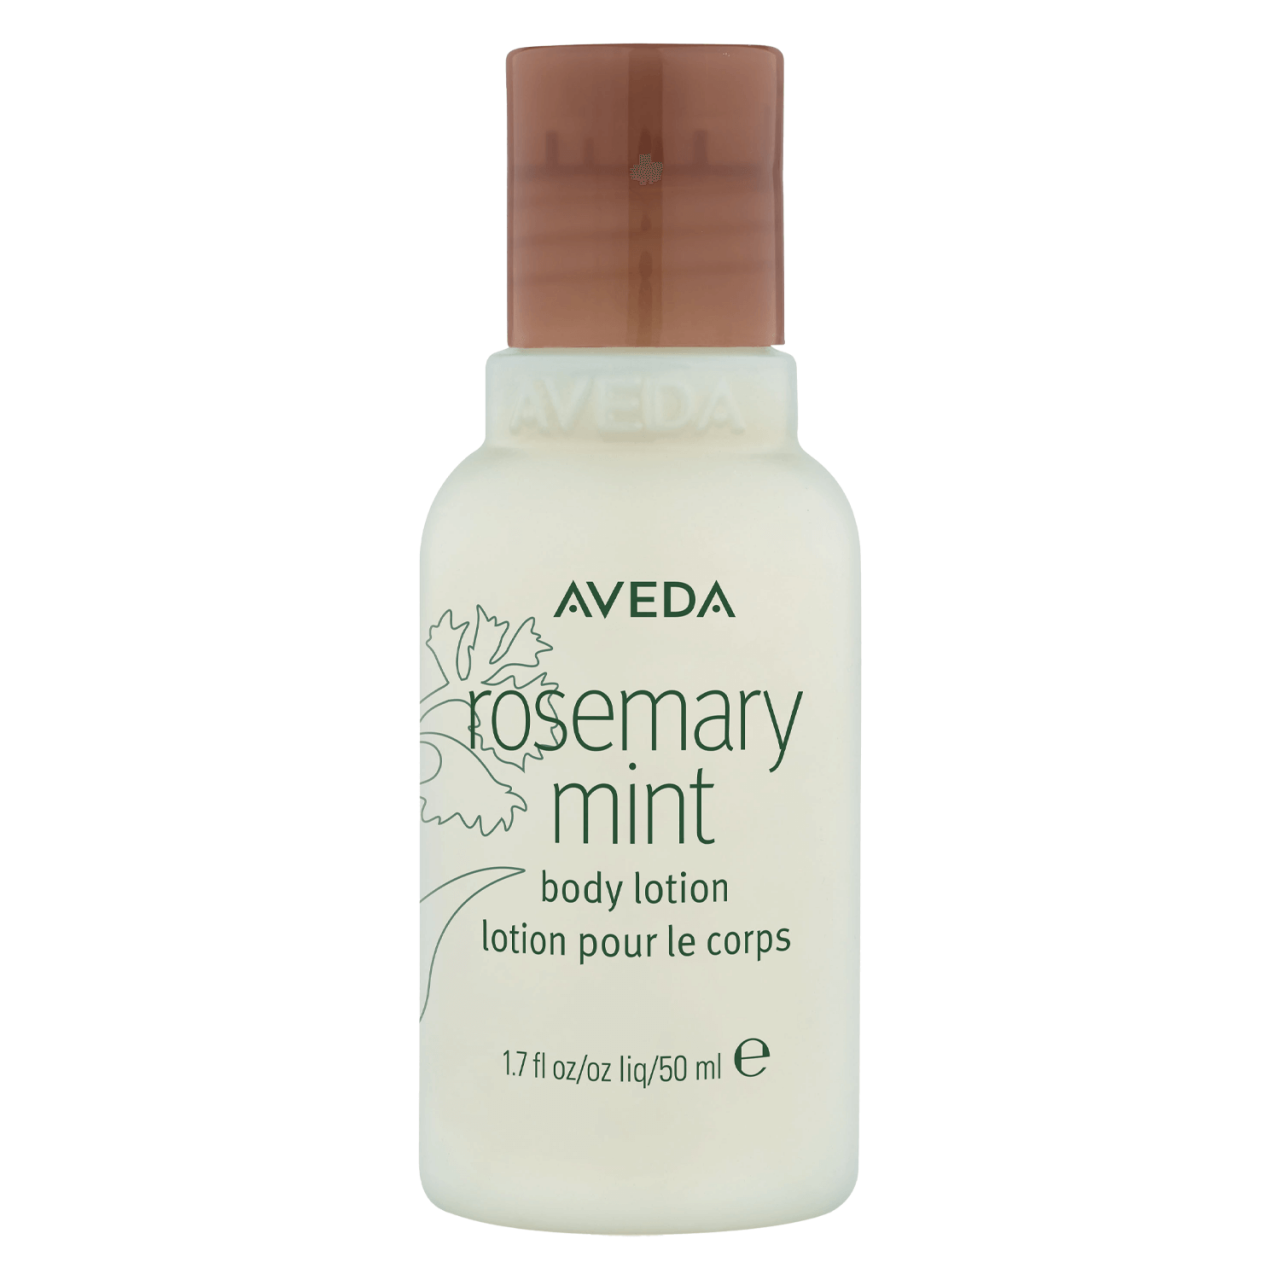 rosemary mint - body lotion von Aveda